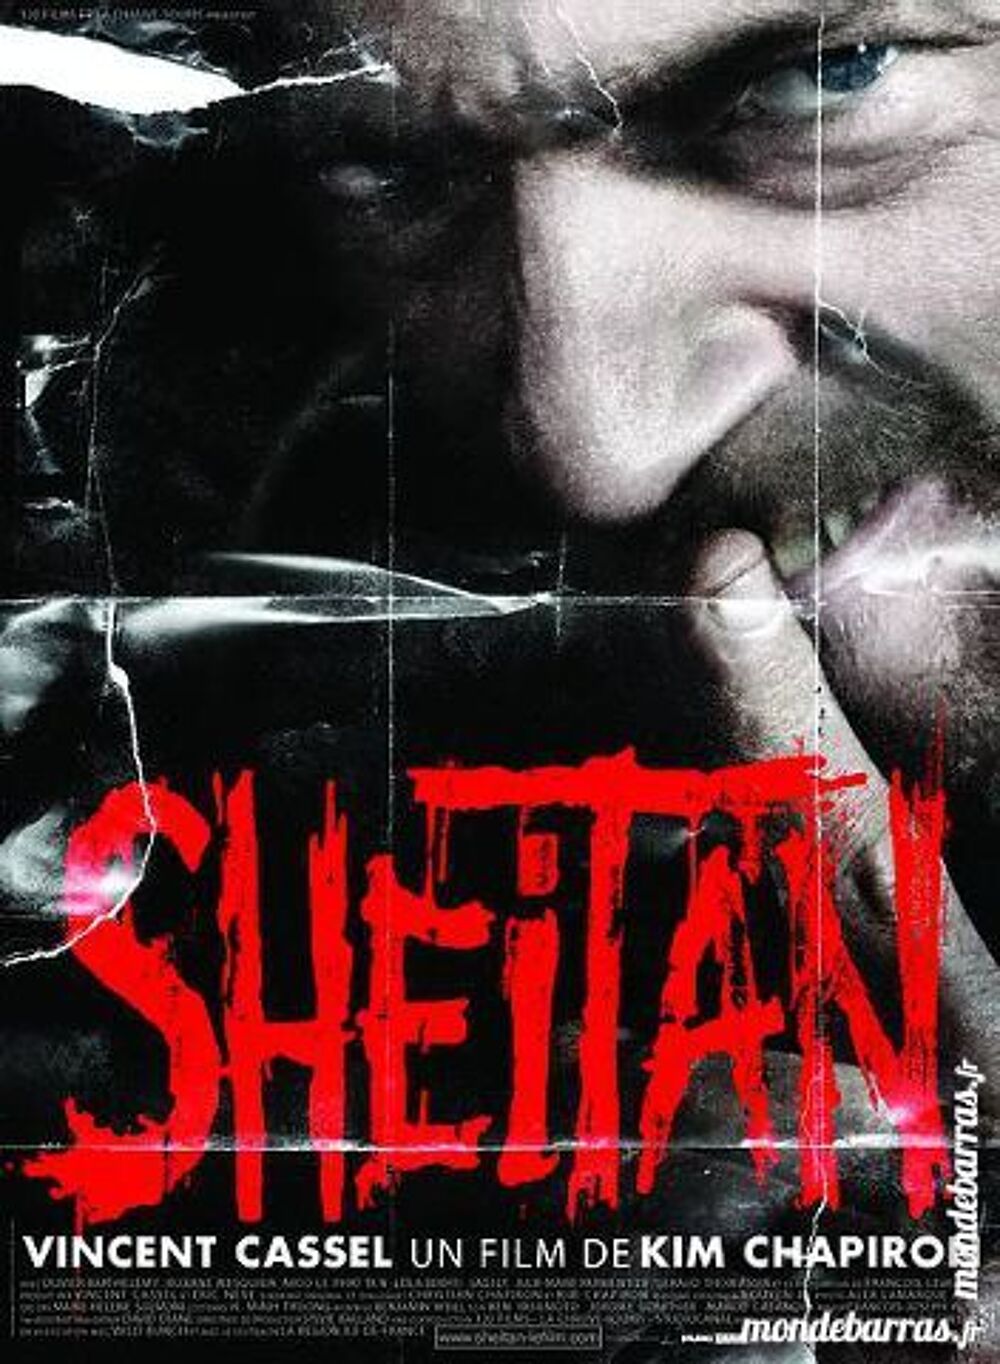 K7 Vhs: Sheitan (279) DVD et blu-ray